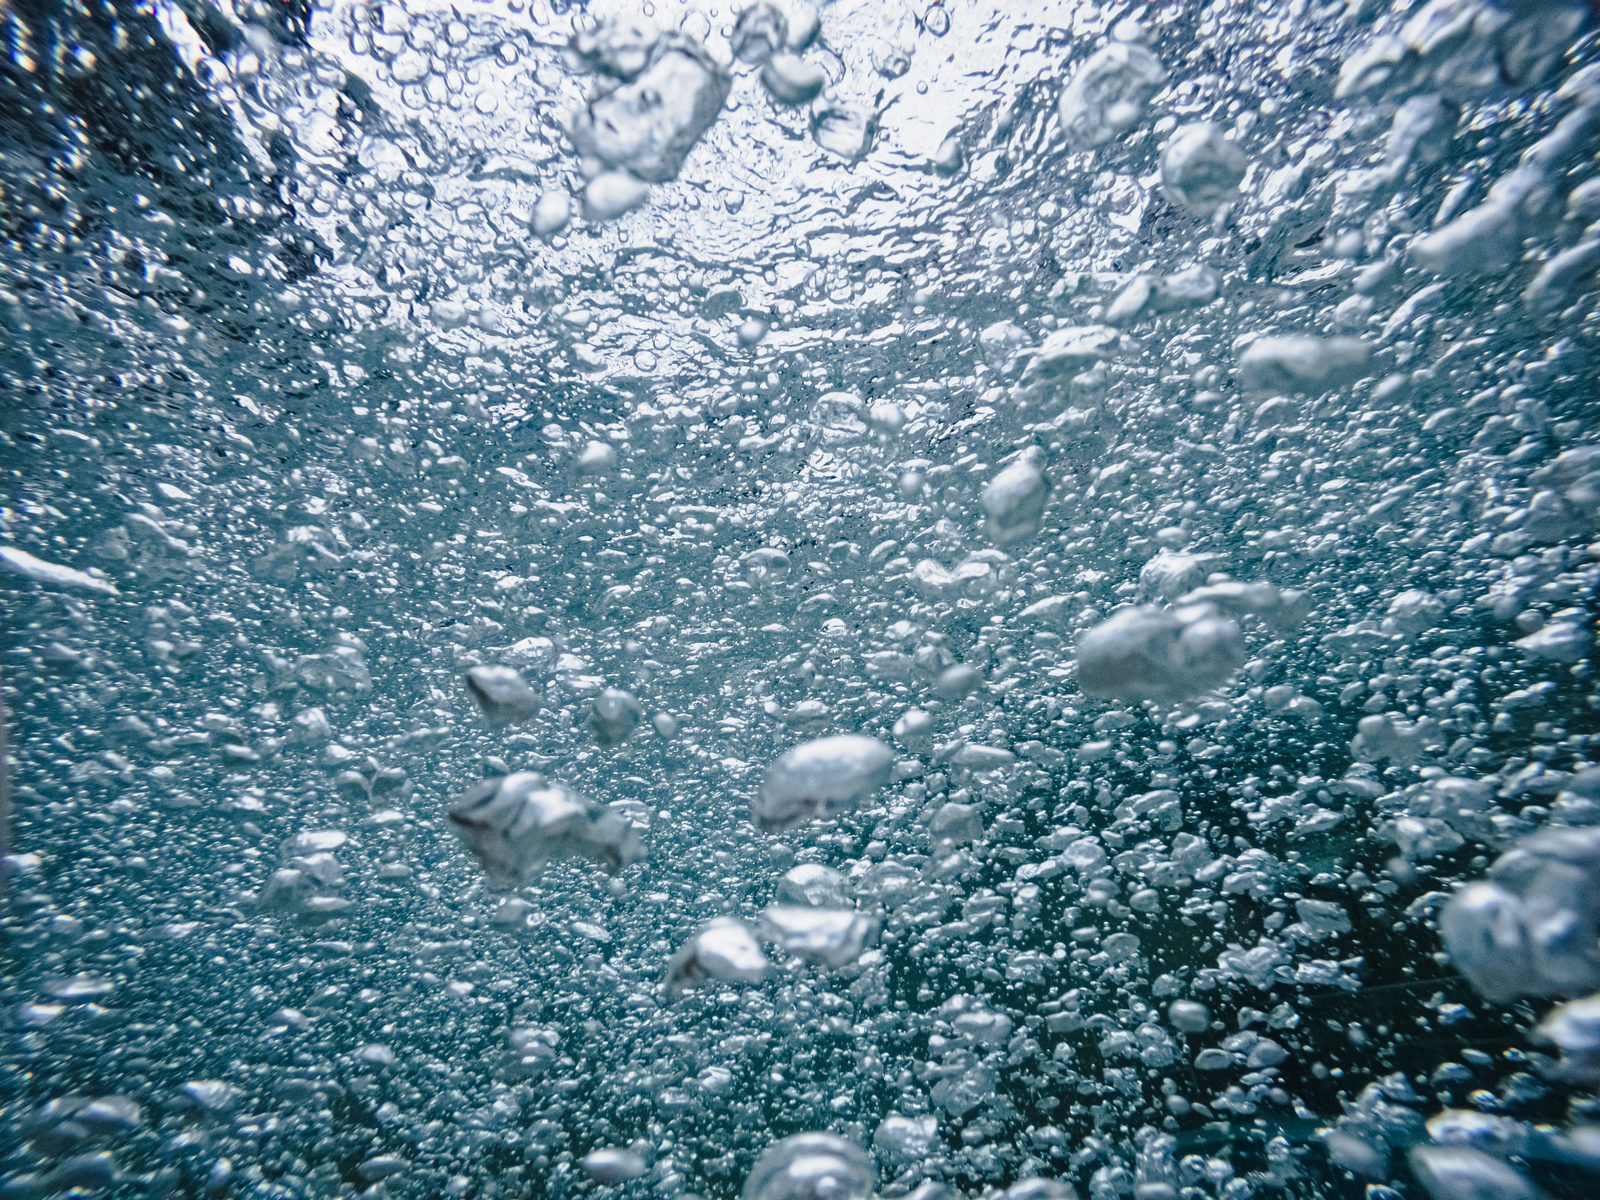 「水中のぶくぶく気泡のテクスチャー」の写真